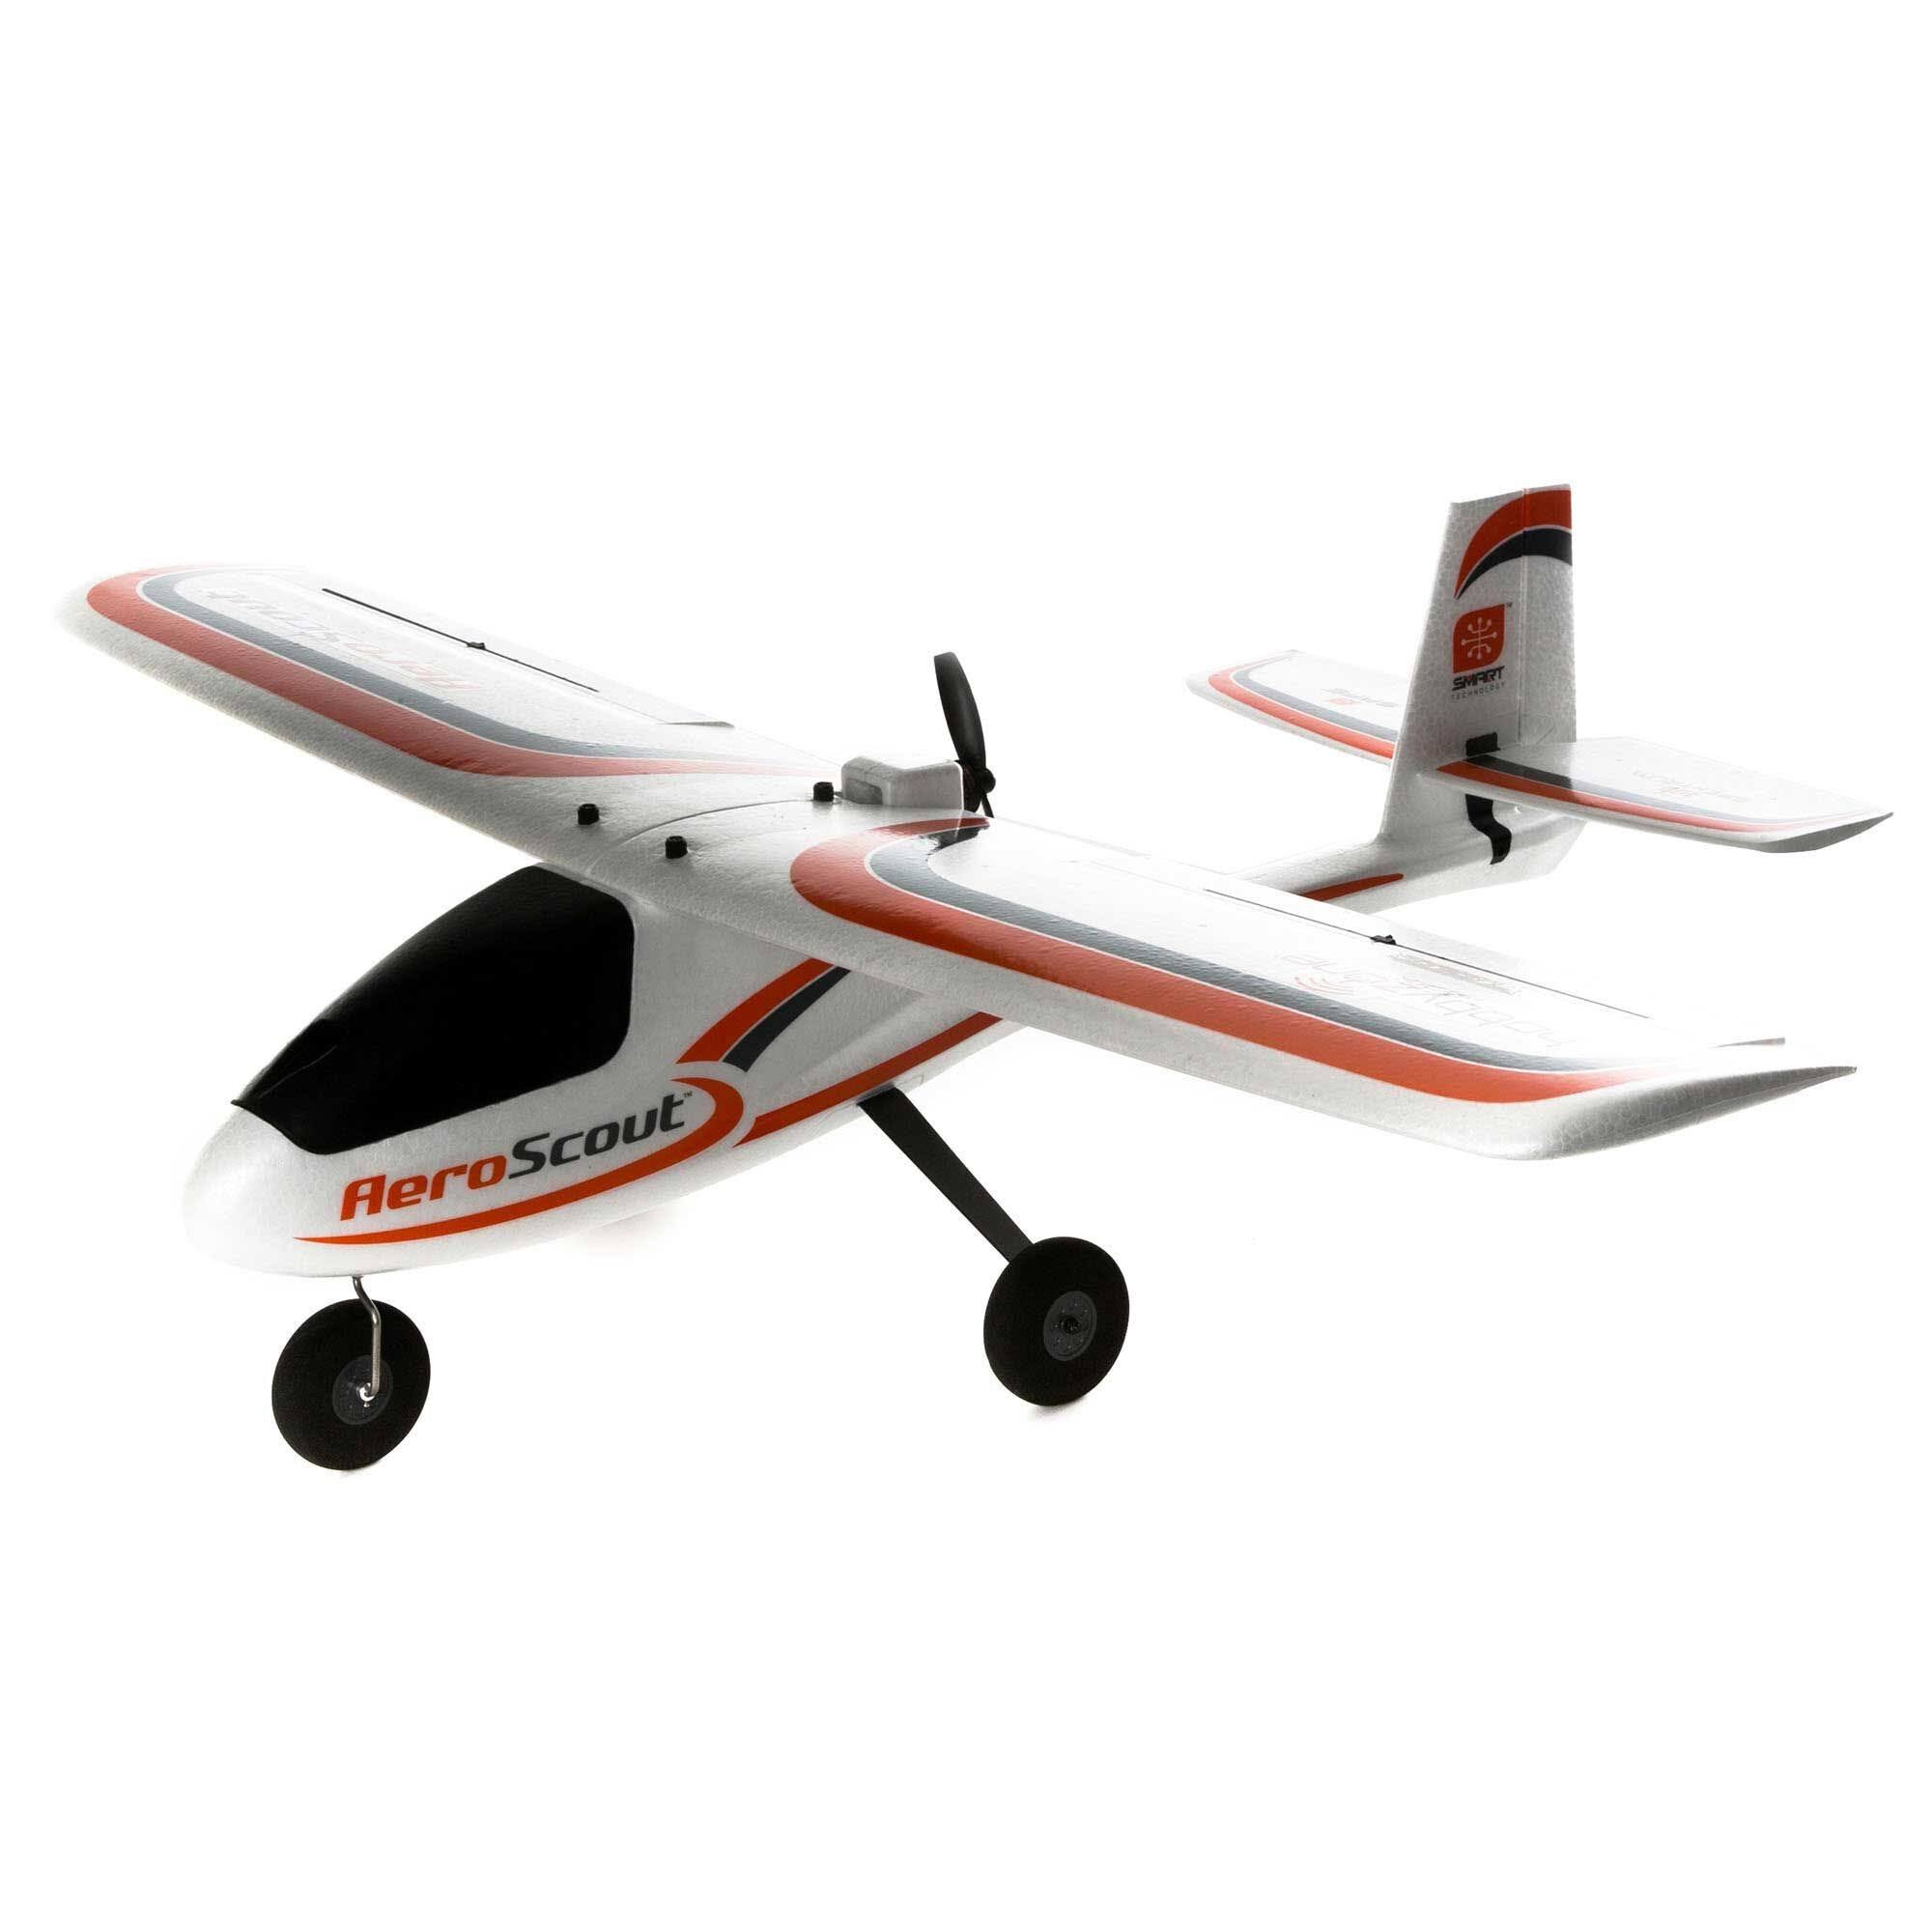 Hobbyzone Trainer Flight Model Aeroscout S 1.1m Bnf Basic / HBZ3850